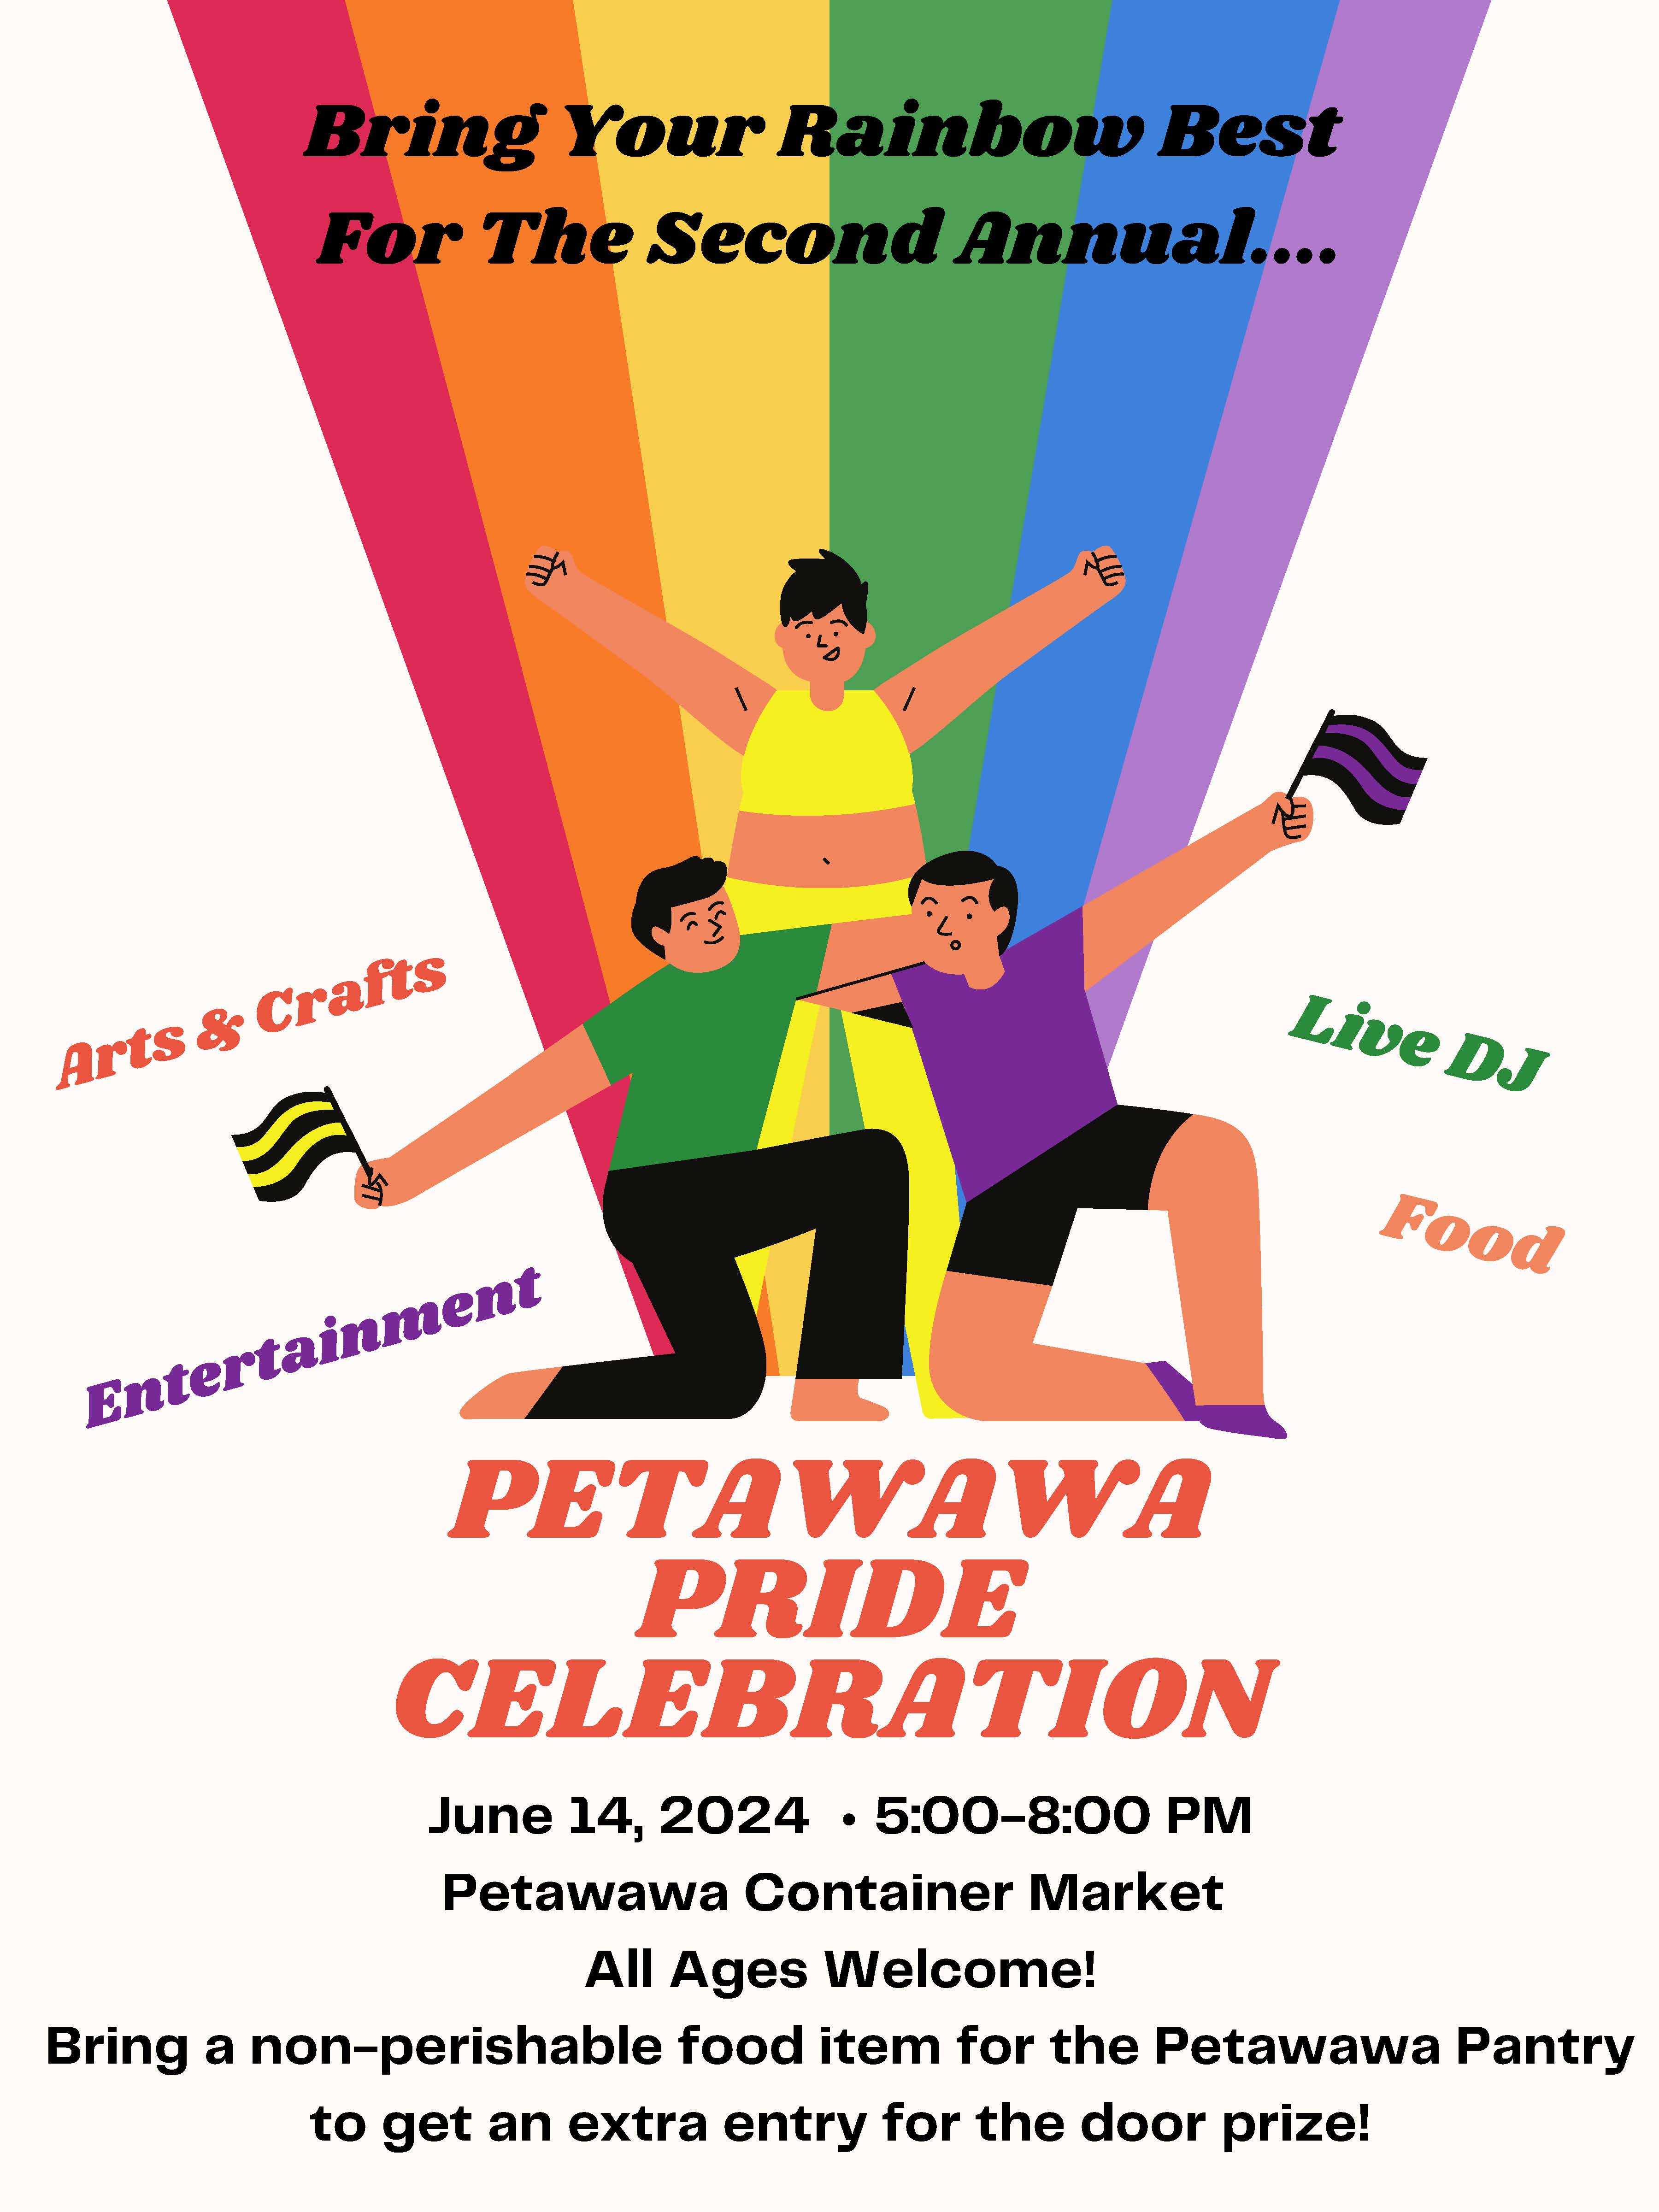 petawawa pride poster, june 14, 2024, colourful rainbow